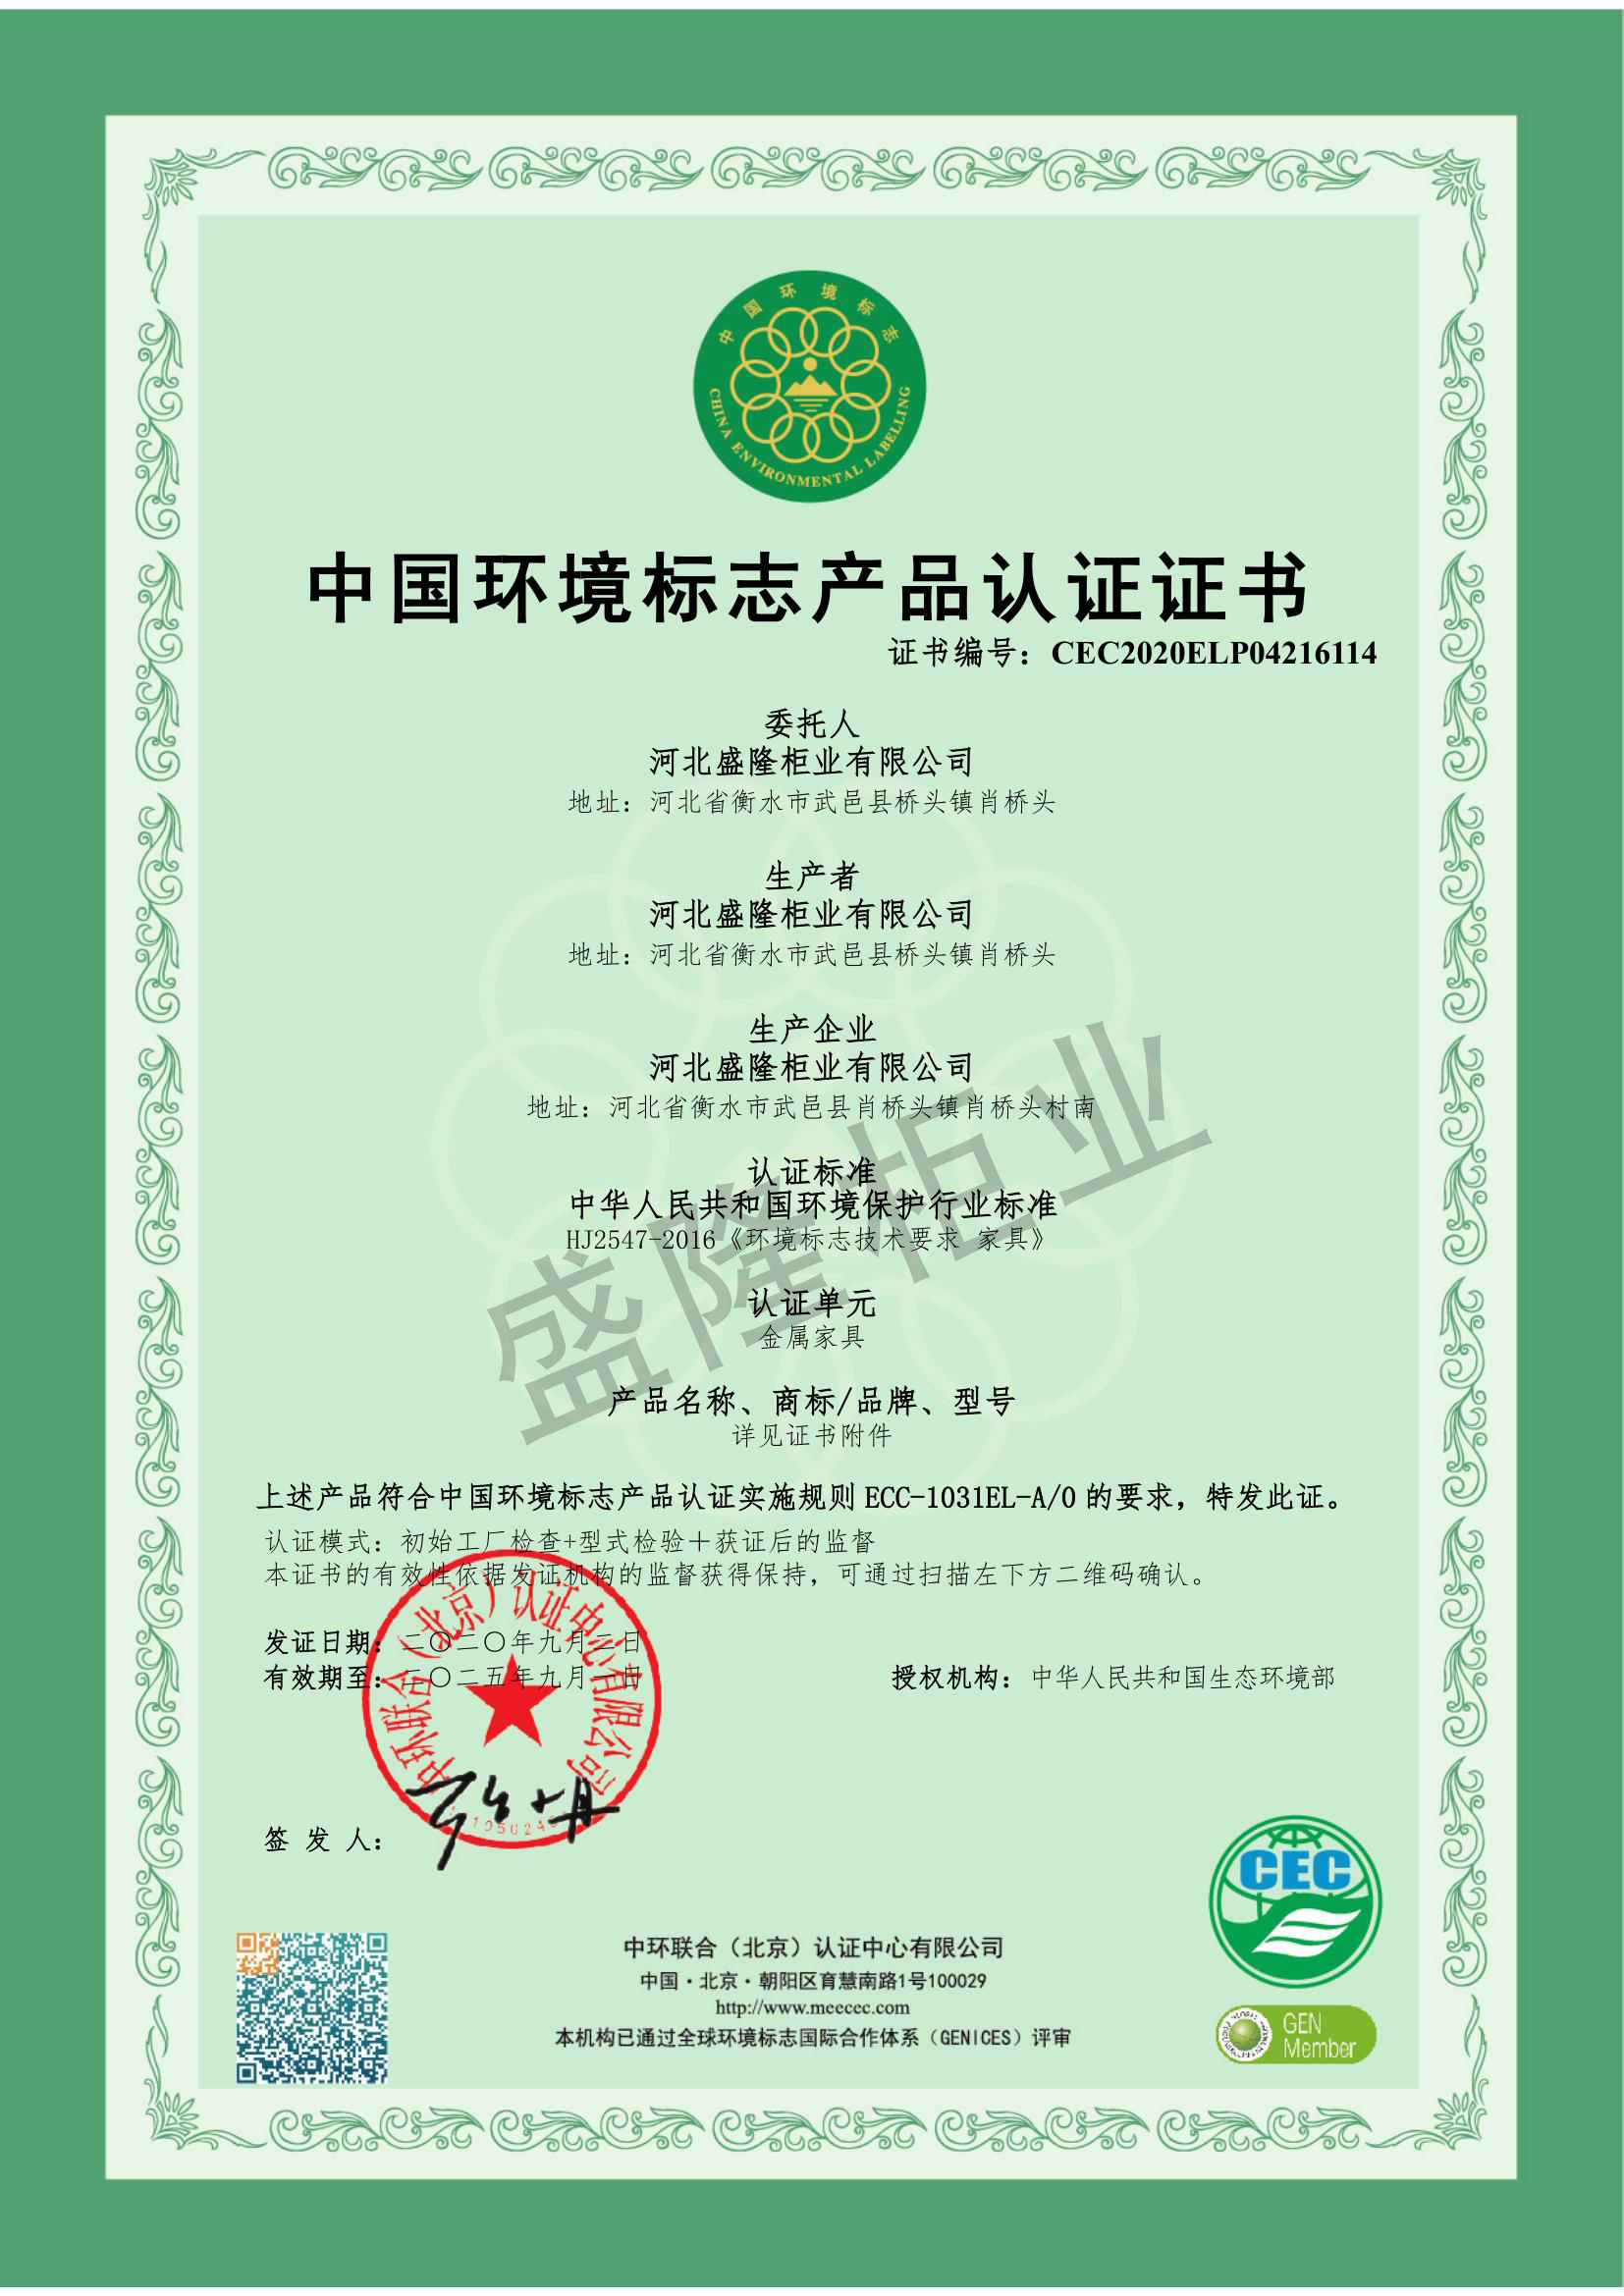 敦煌环境标志产品认证证书